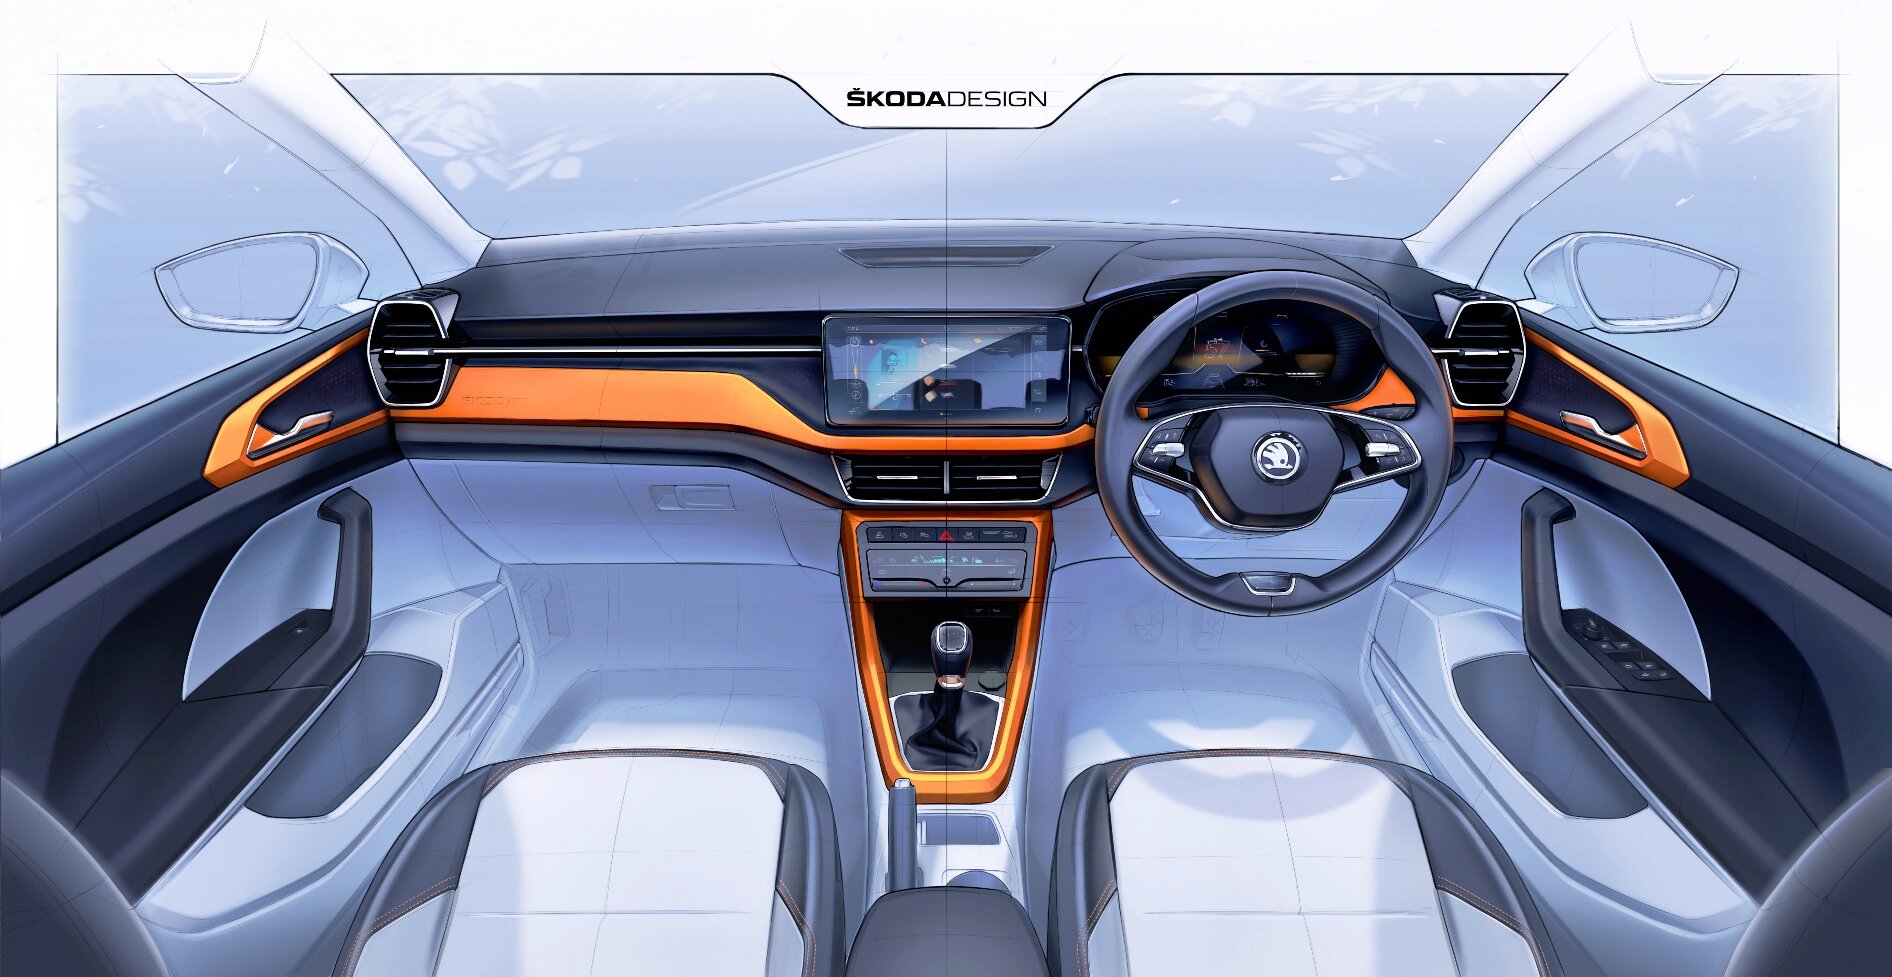 Škoda ukázala skici interiéru nového SUV Kushaq pro indický trh